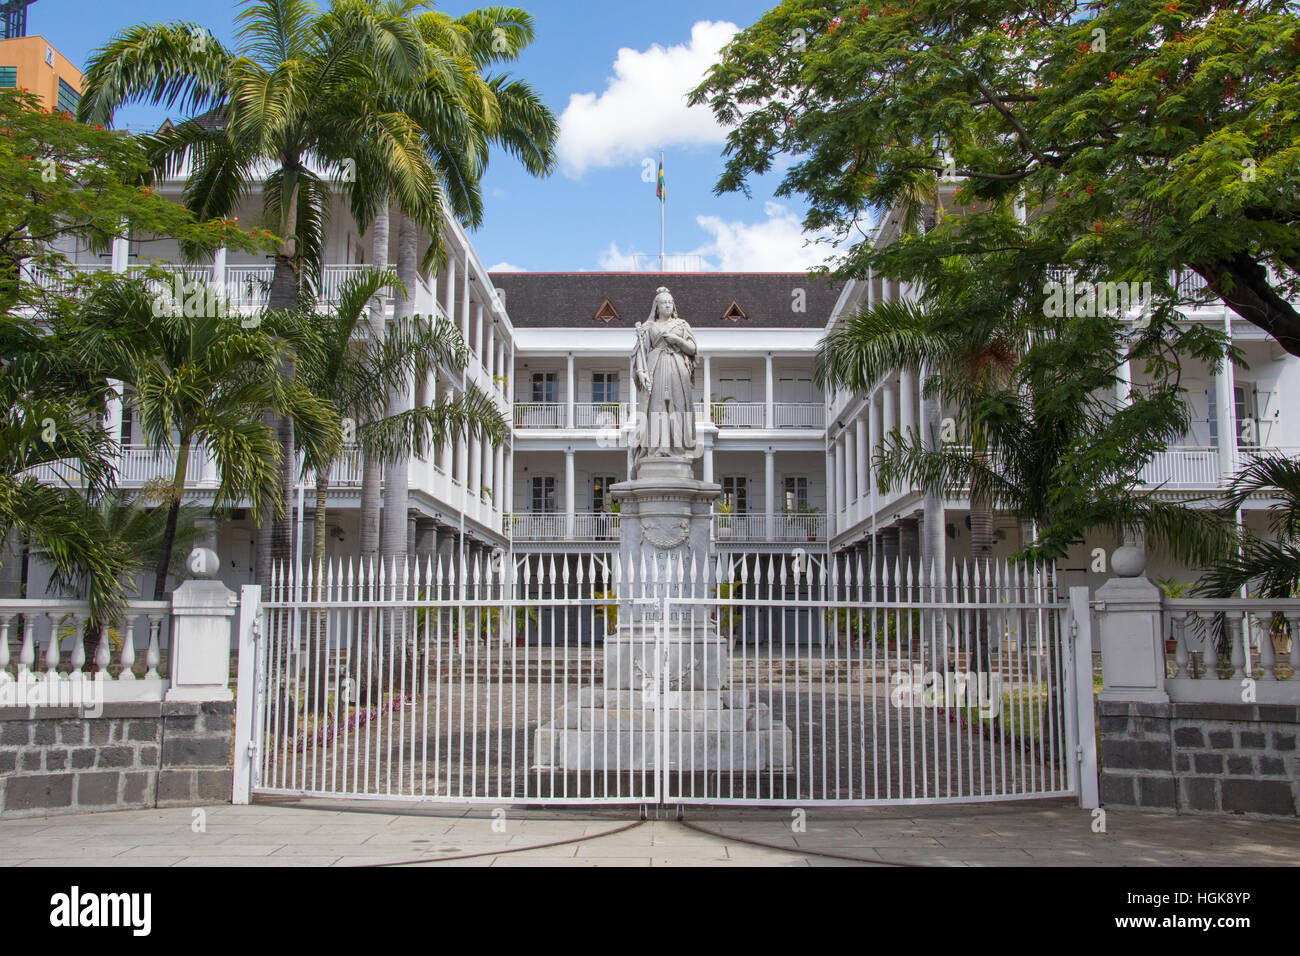 Statue der Königin Victoria, Government House, Französisch Colonial Gebäude noch gebrauchte von der gegenwärtigen Regierung, Port Louis, Mauritius Stockfoto